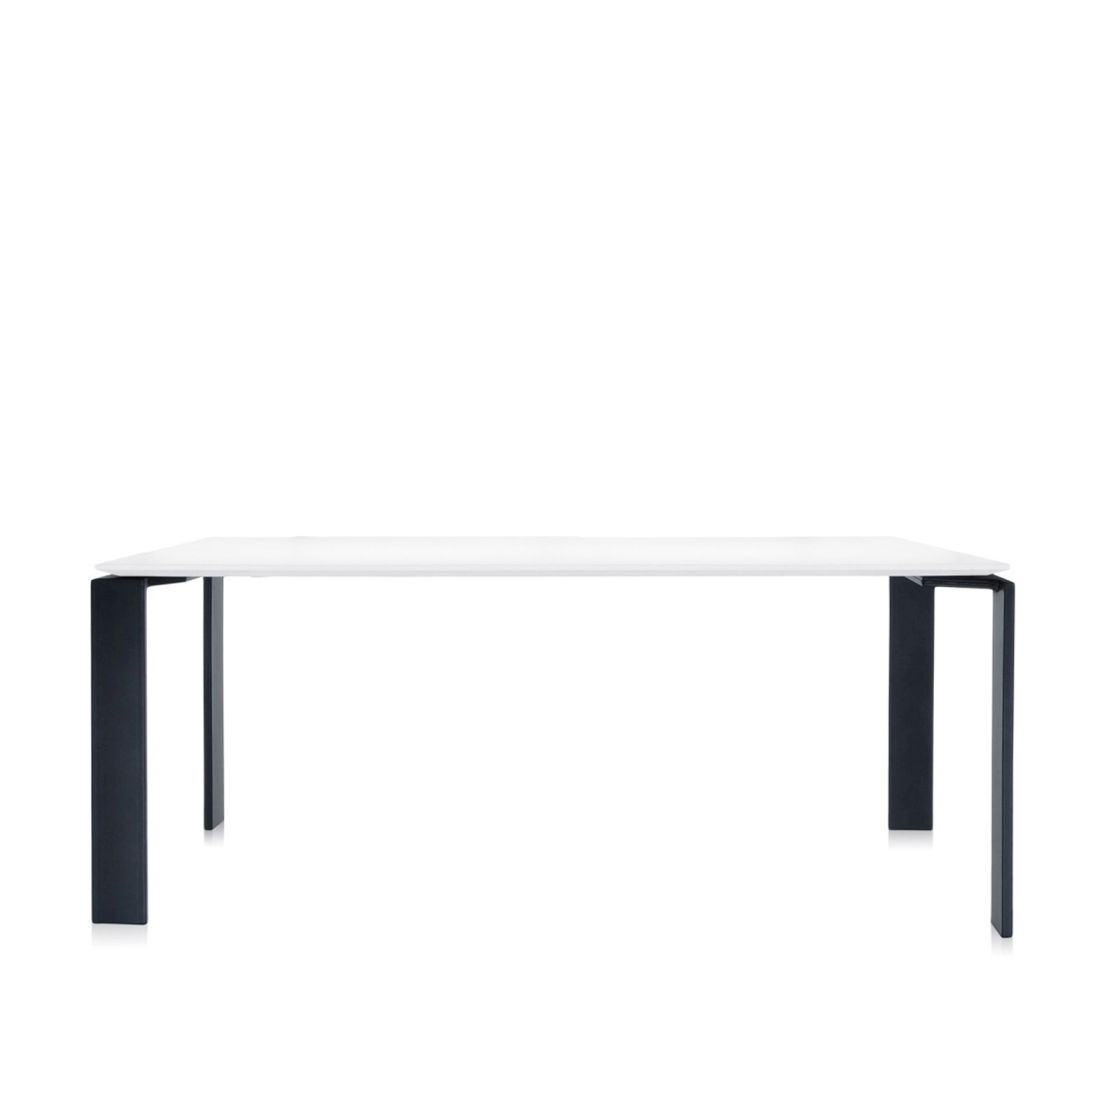 Four Tisch 190 Beine schwarz, Platte weiß